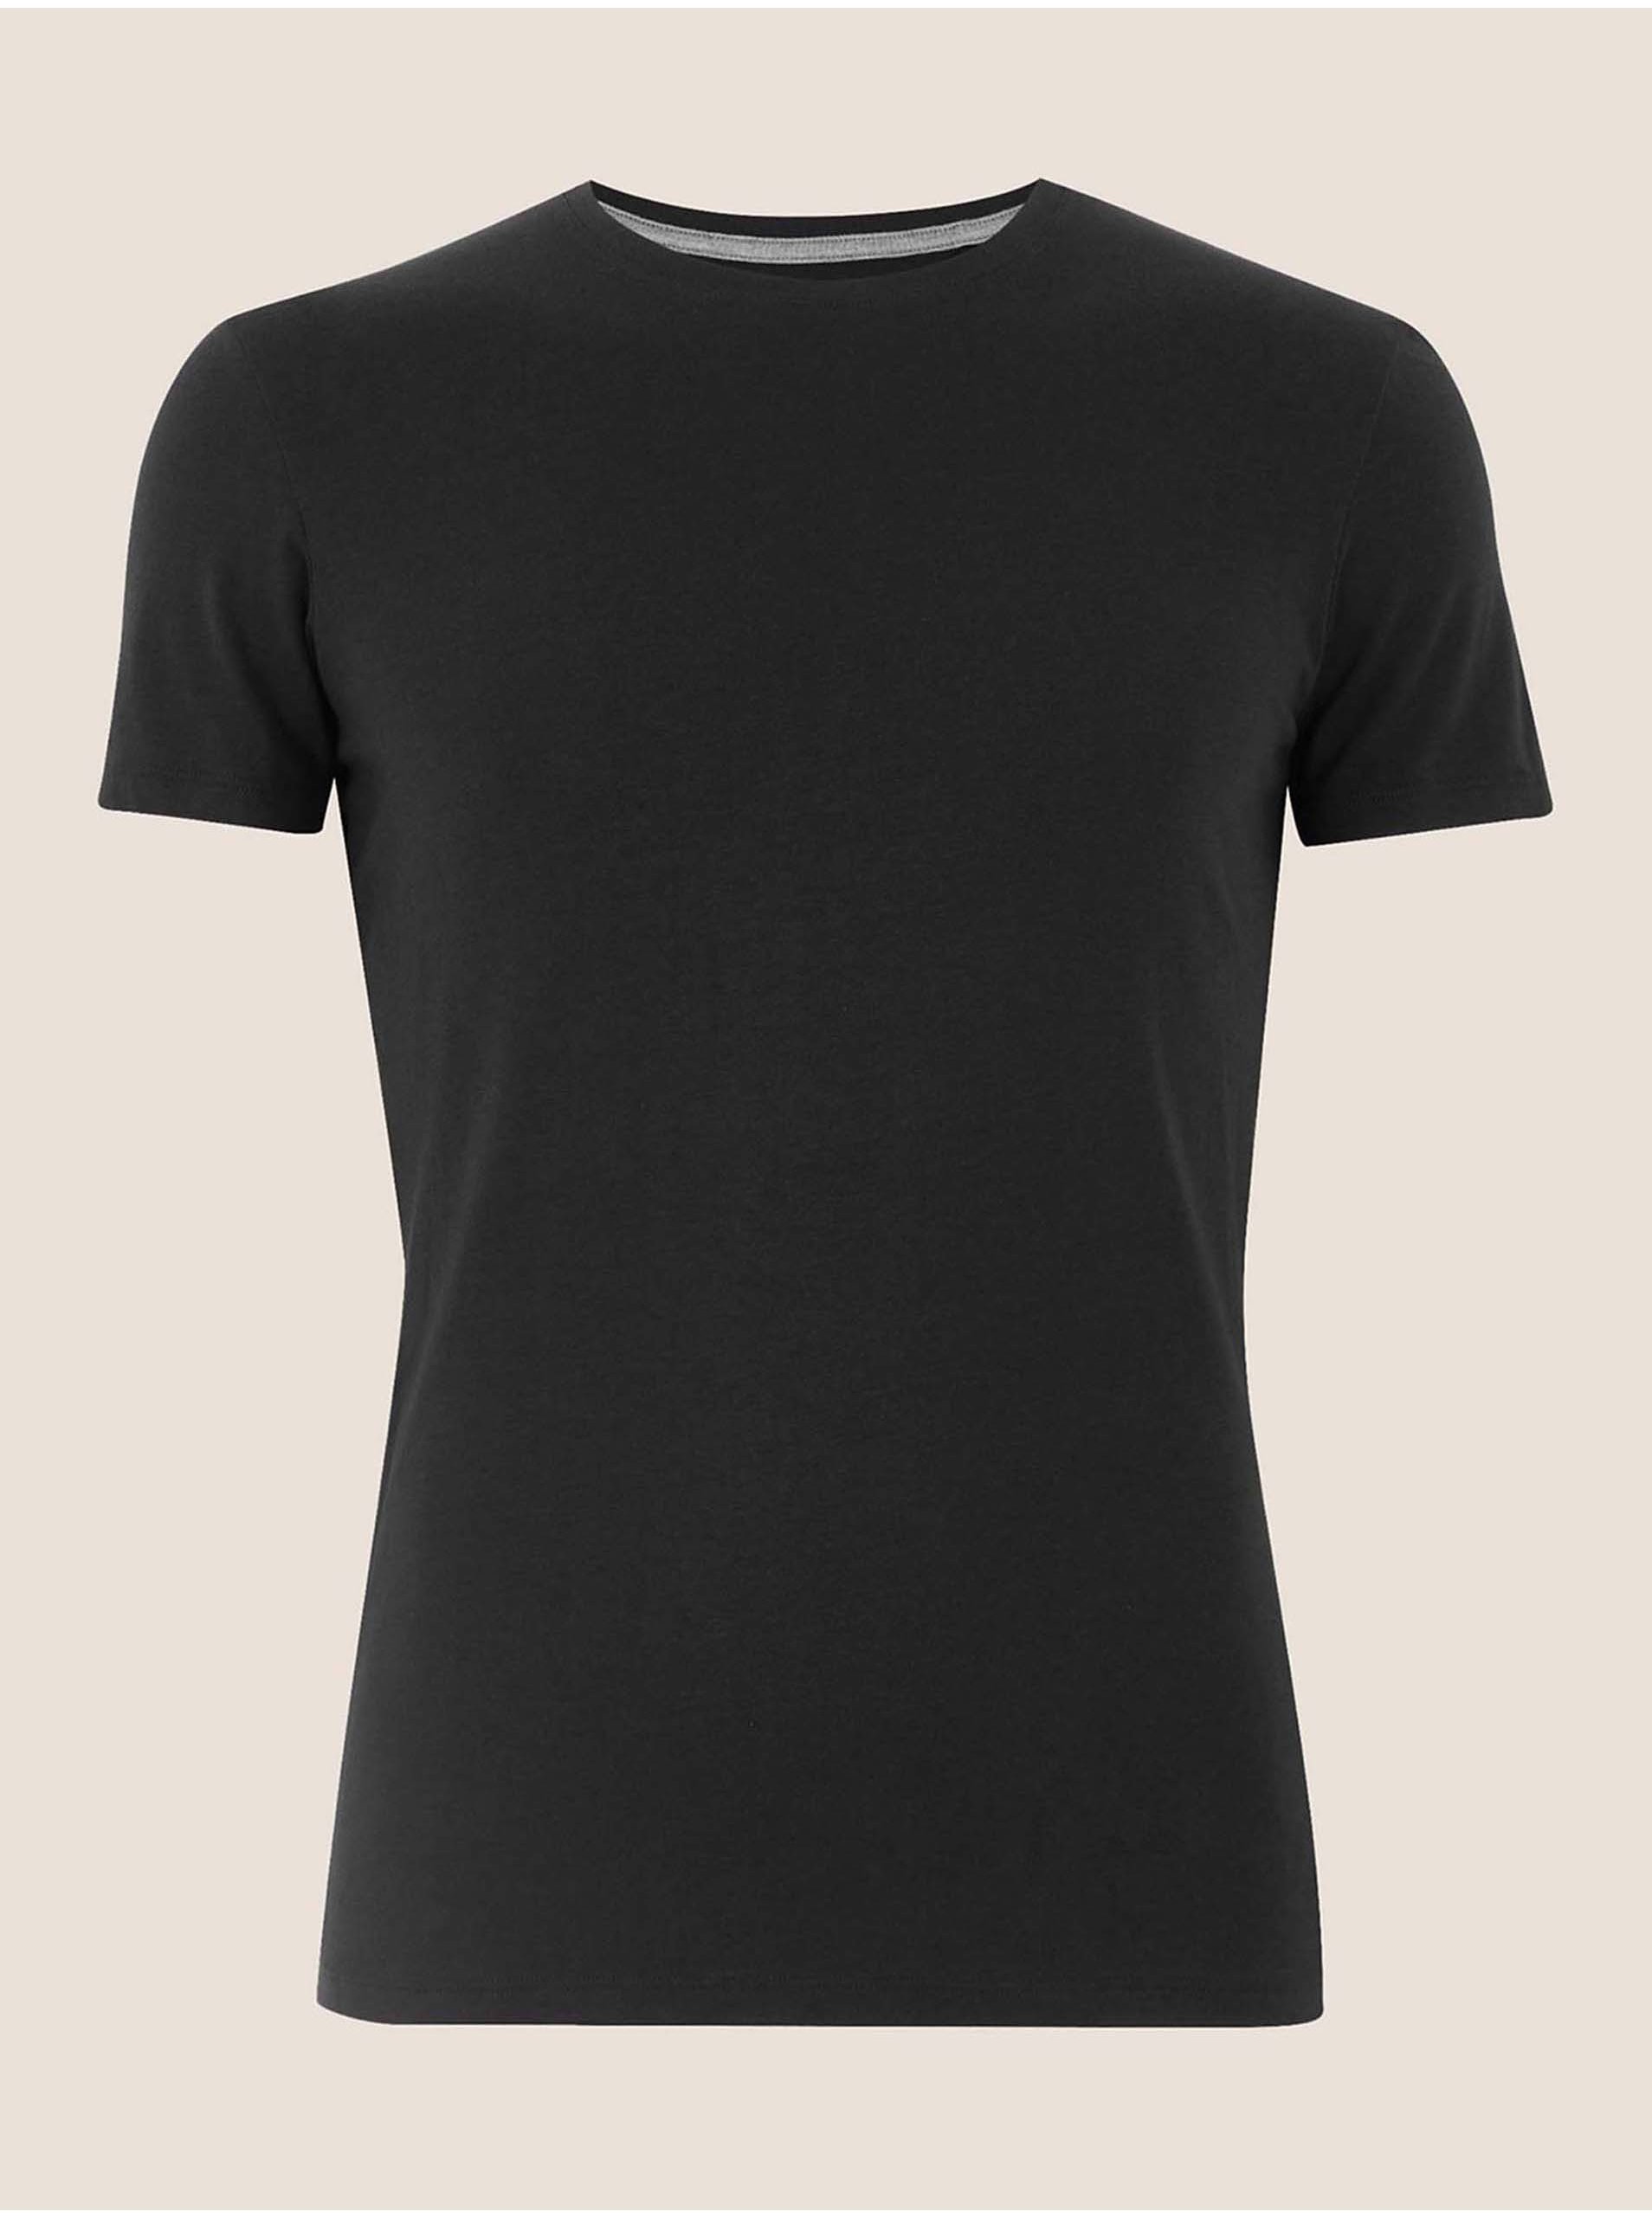 Lacno Čierne pánske tričko z prémiovej bavlny Marks & Spencer